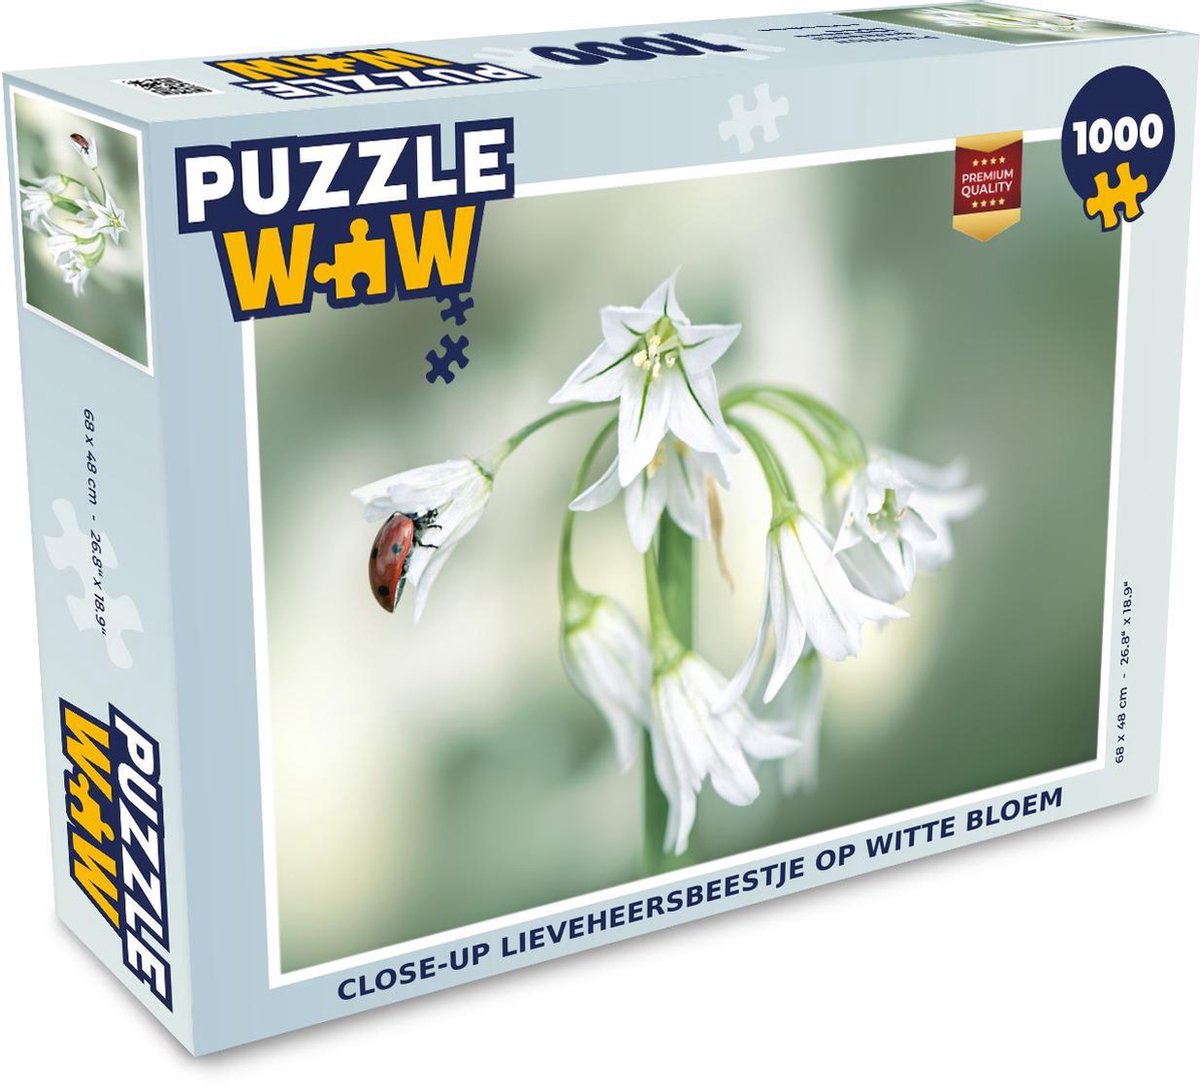 Afbeelding van product Puzzel 1000 stukjes volwassenen Insecten van Dichtbij 1000 stukjes - Close-up lieveheersbeestje op witte bloem - PuzzleWow heeft +100000 puzzels